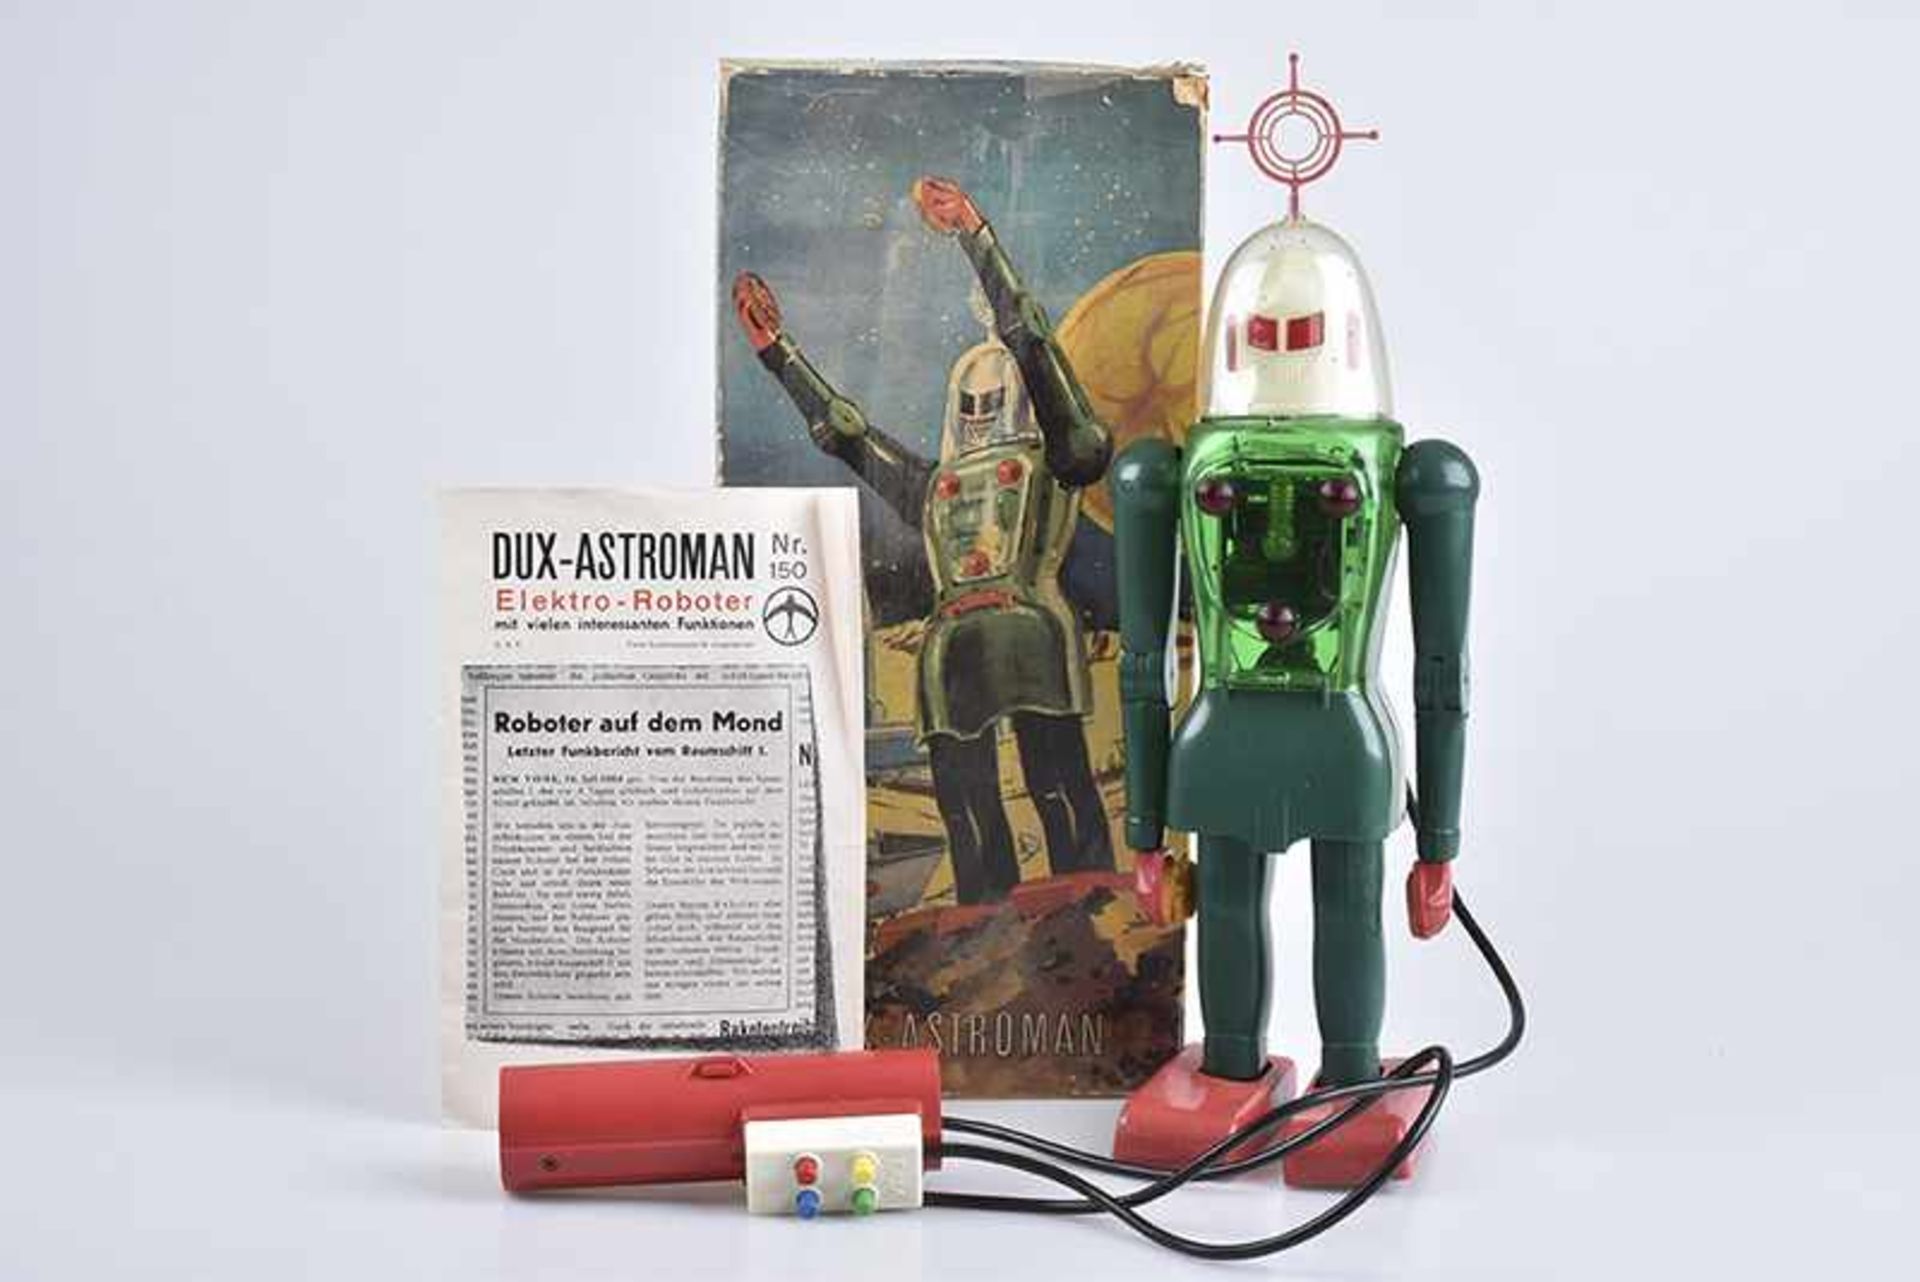 DUX-ASTROMAN Electric Robot, um 1960, Kunststoff, grün, H 30 cm, BA mit Fernsteuerung, Scheiben an